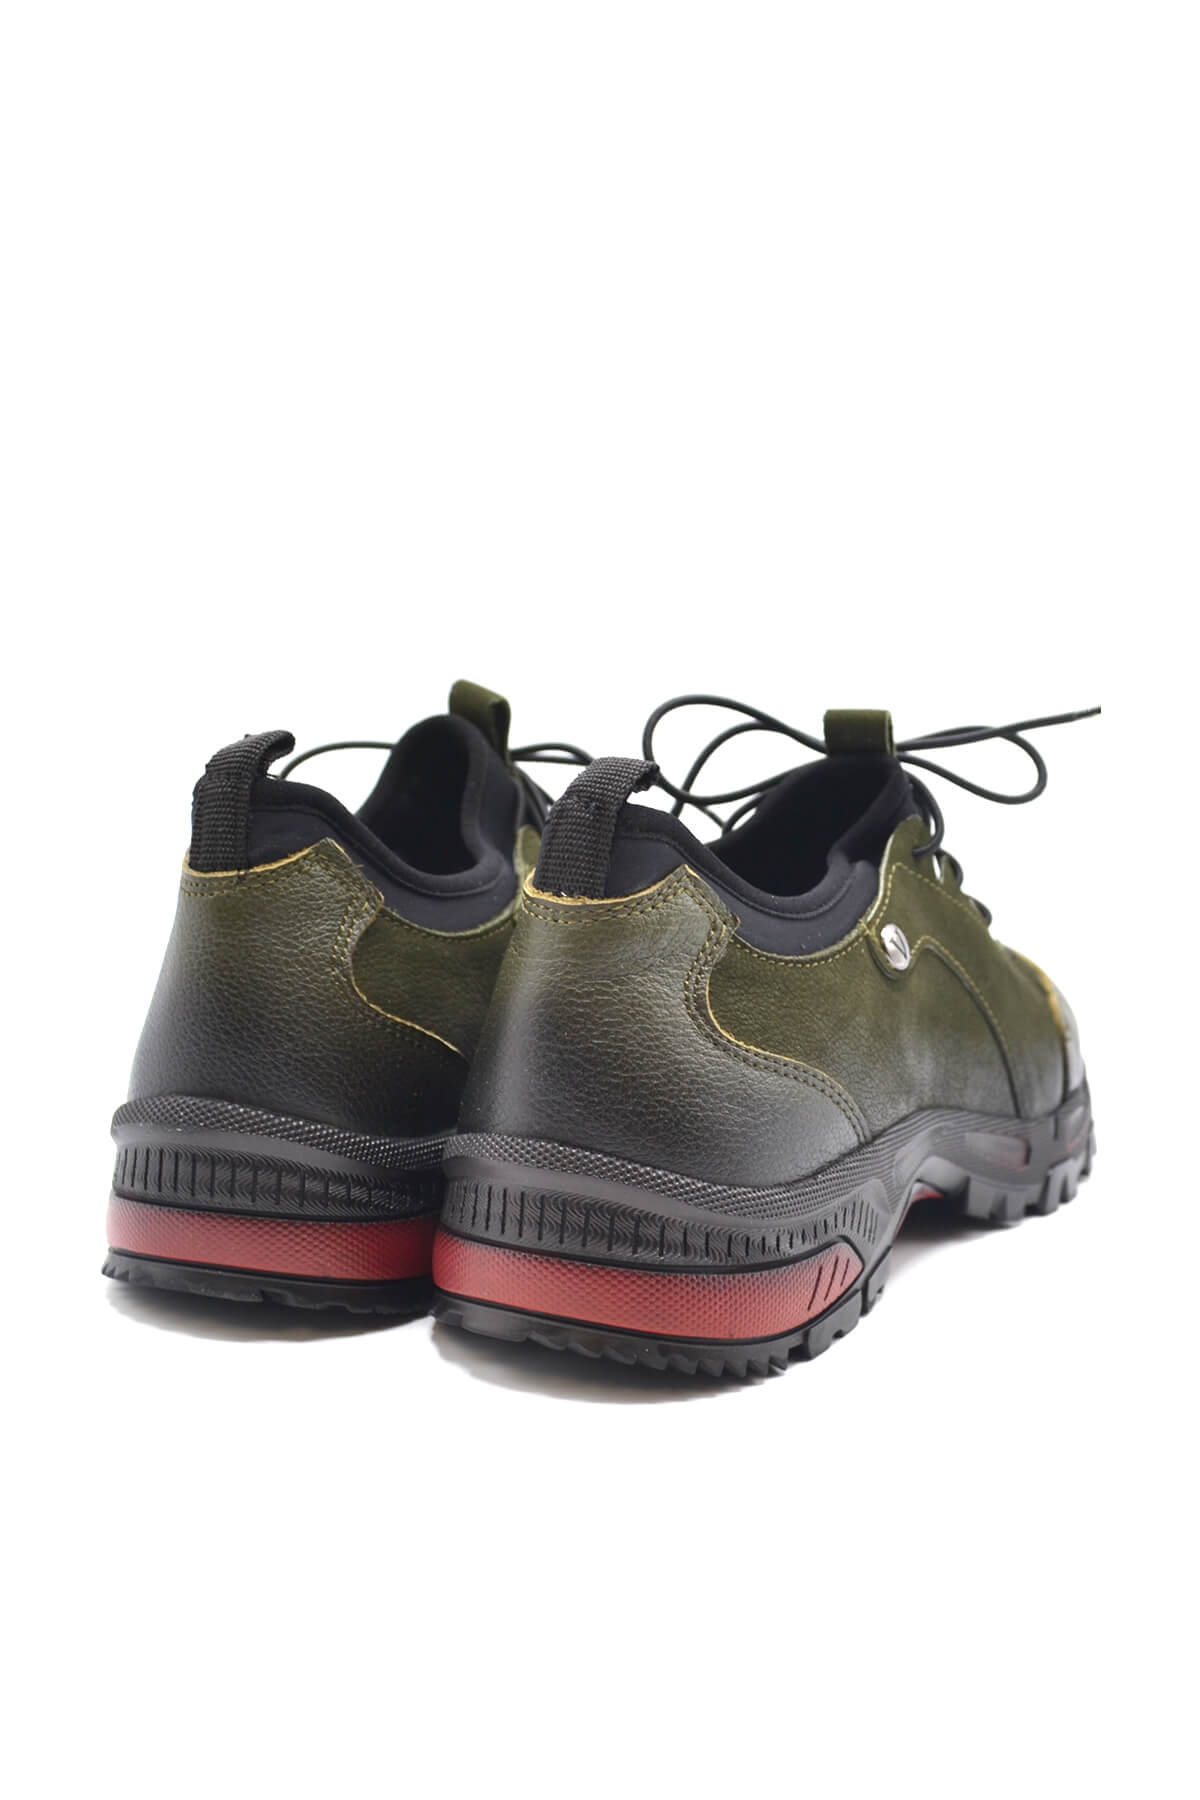 Kadın Comfort Deri Sneaker Yeşil 2252403K - Thumbnail